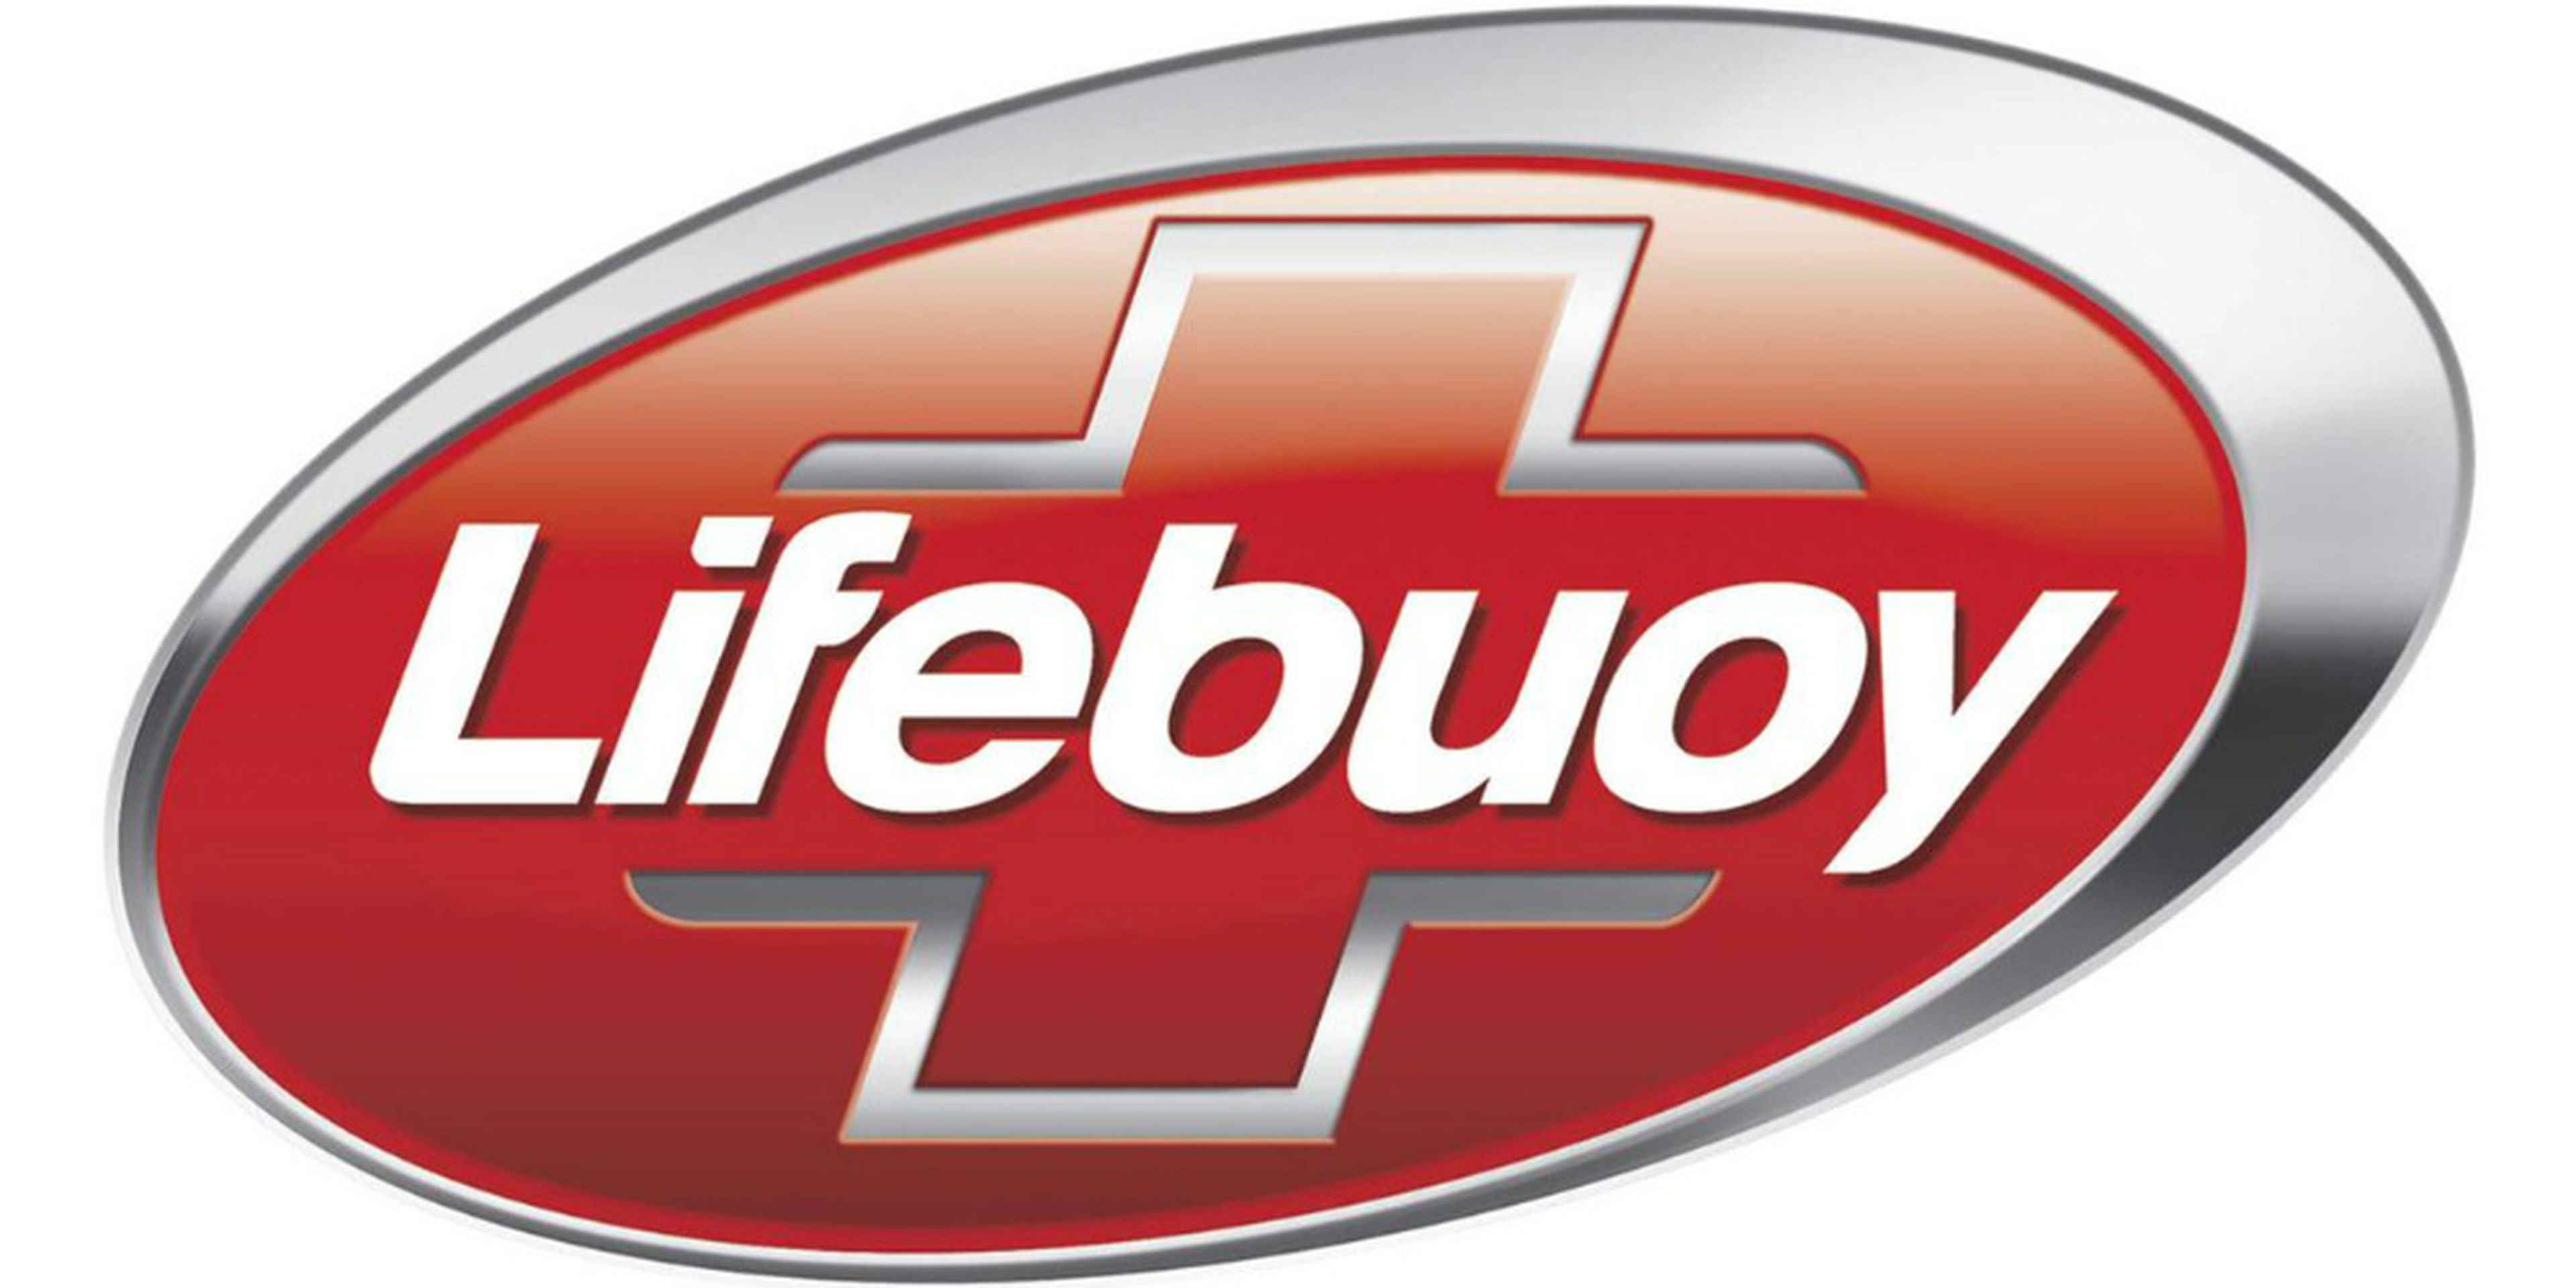 Lifebuoy es una marca de jabón y cremas originaria de Reino Unido.